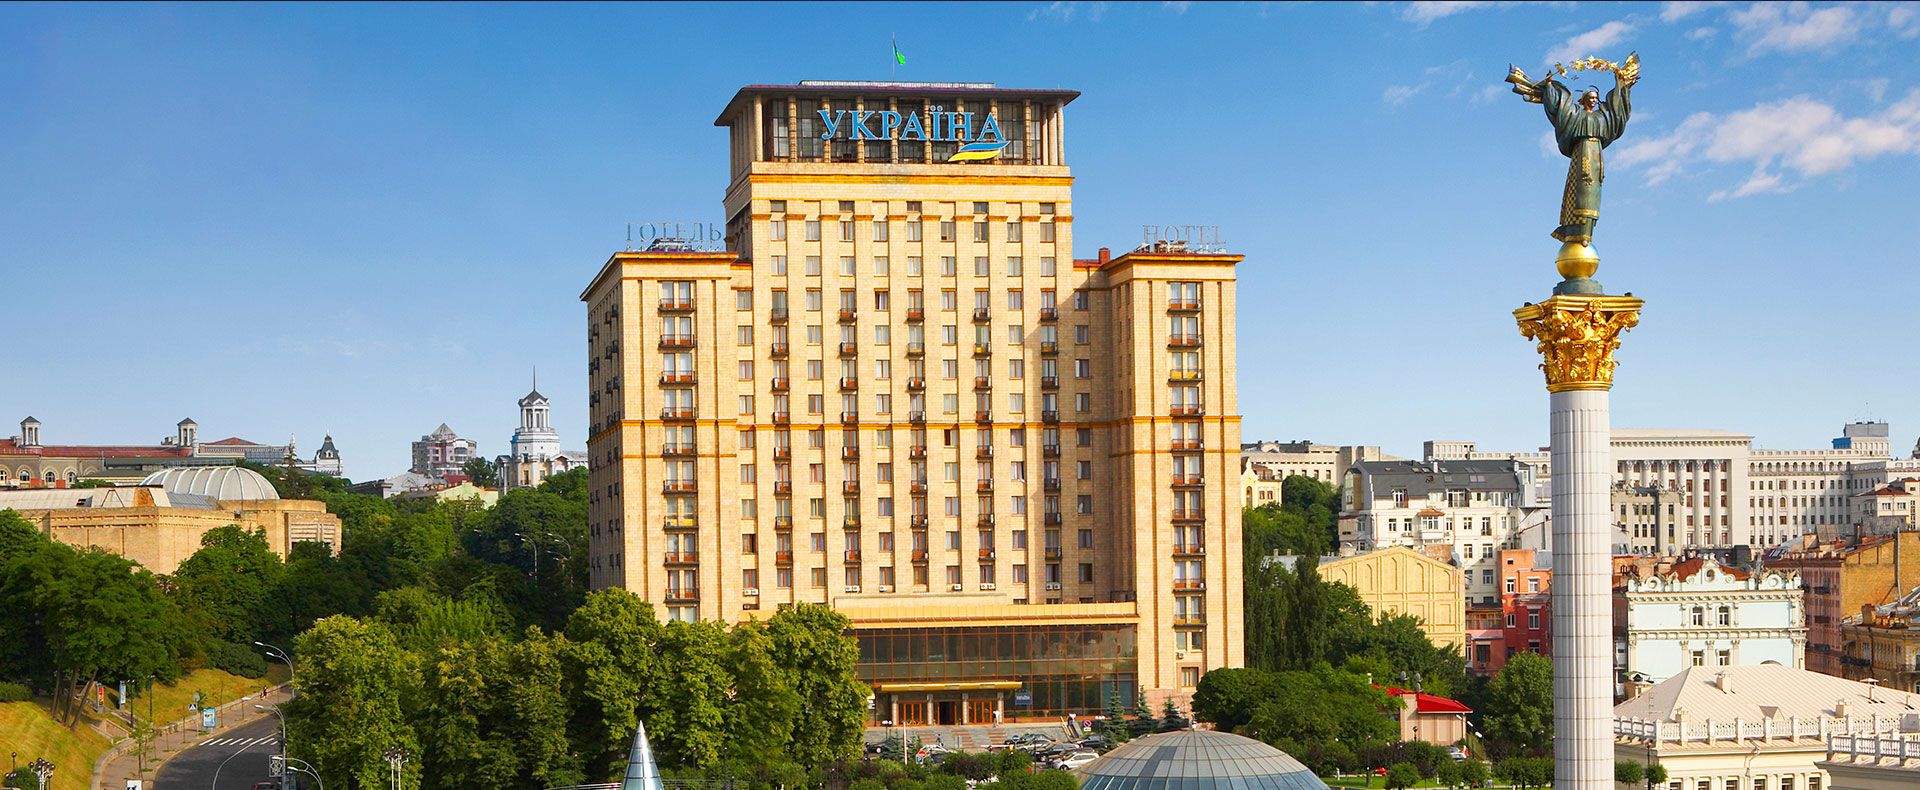 Готель "Україна" вже у списку на приватизацію 